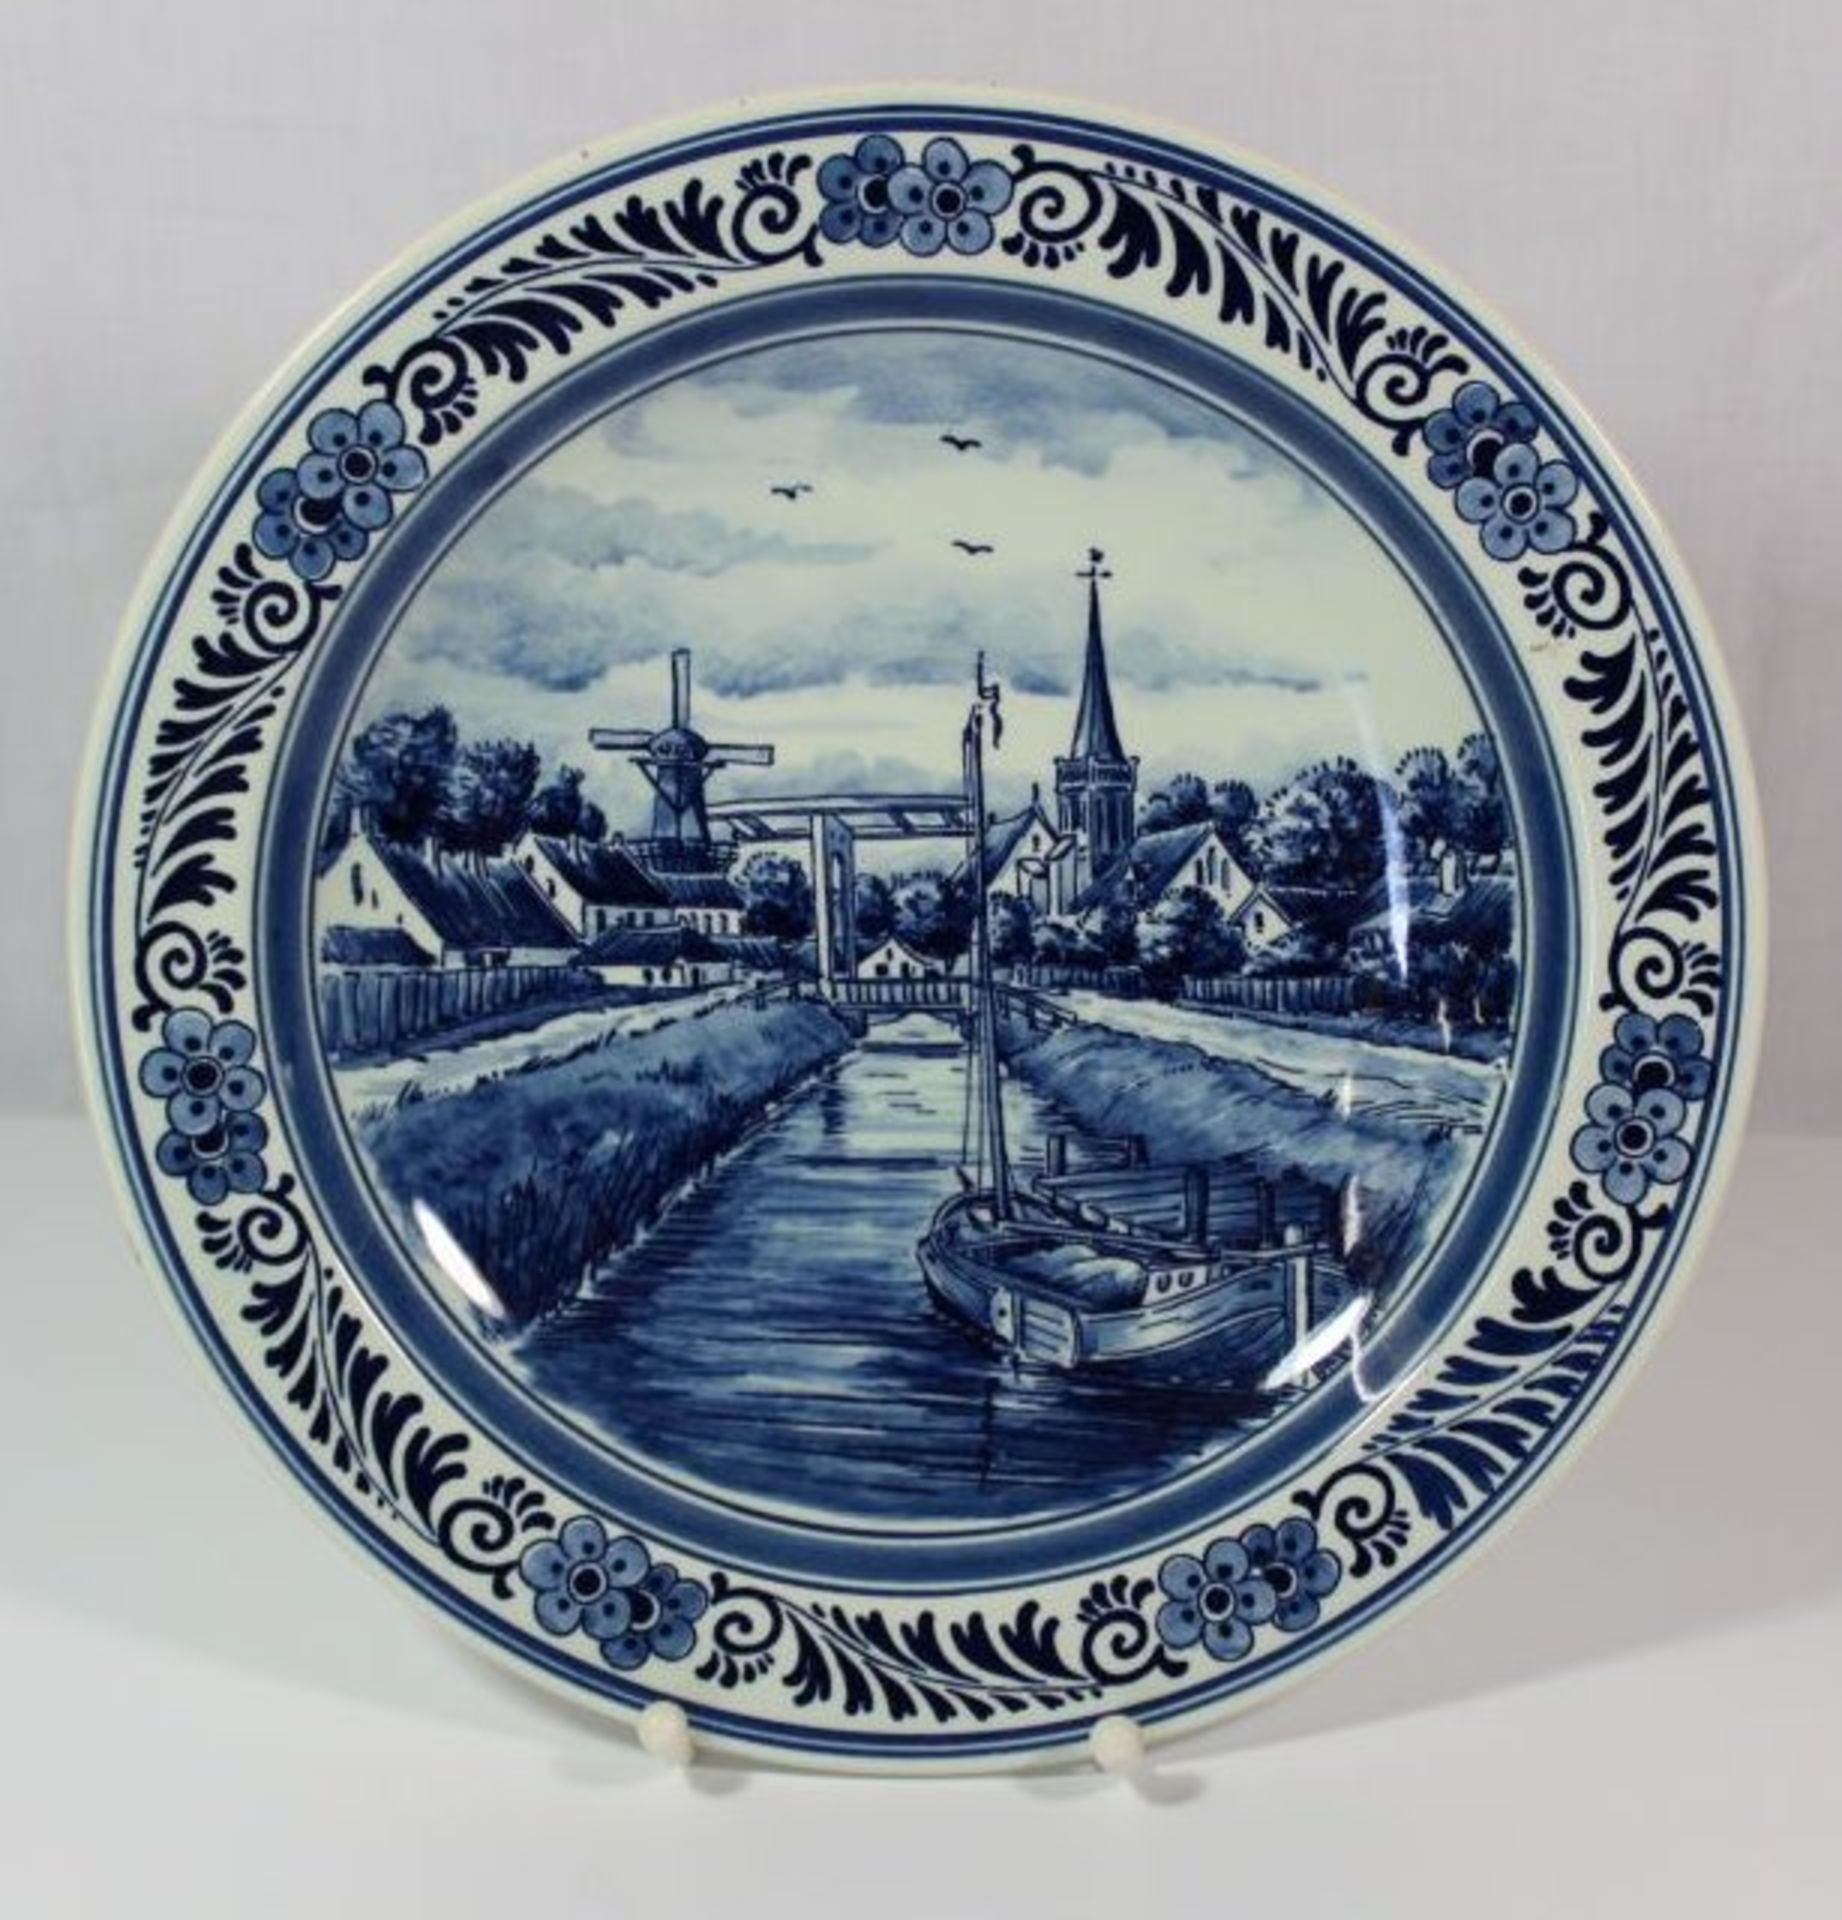 gr. Wandteller, Royal Godewaagen, blaue Ansichten-Malerei, D-28cm.